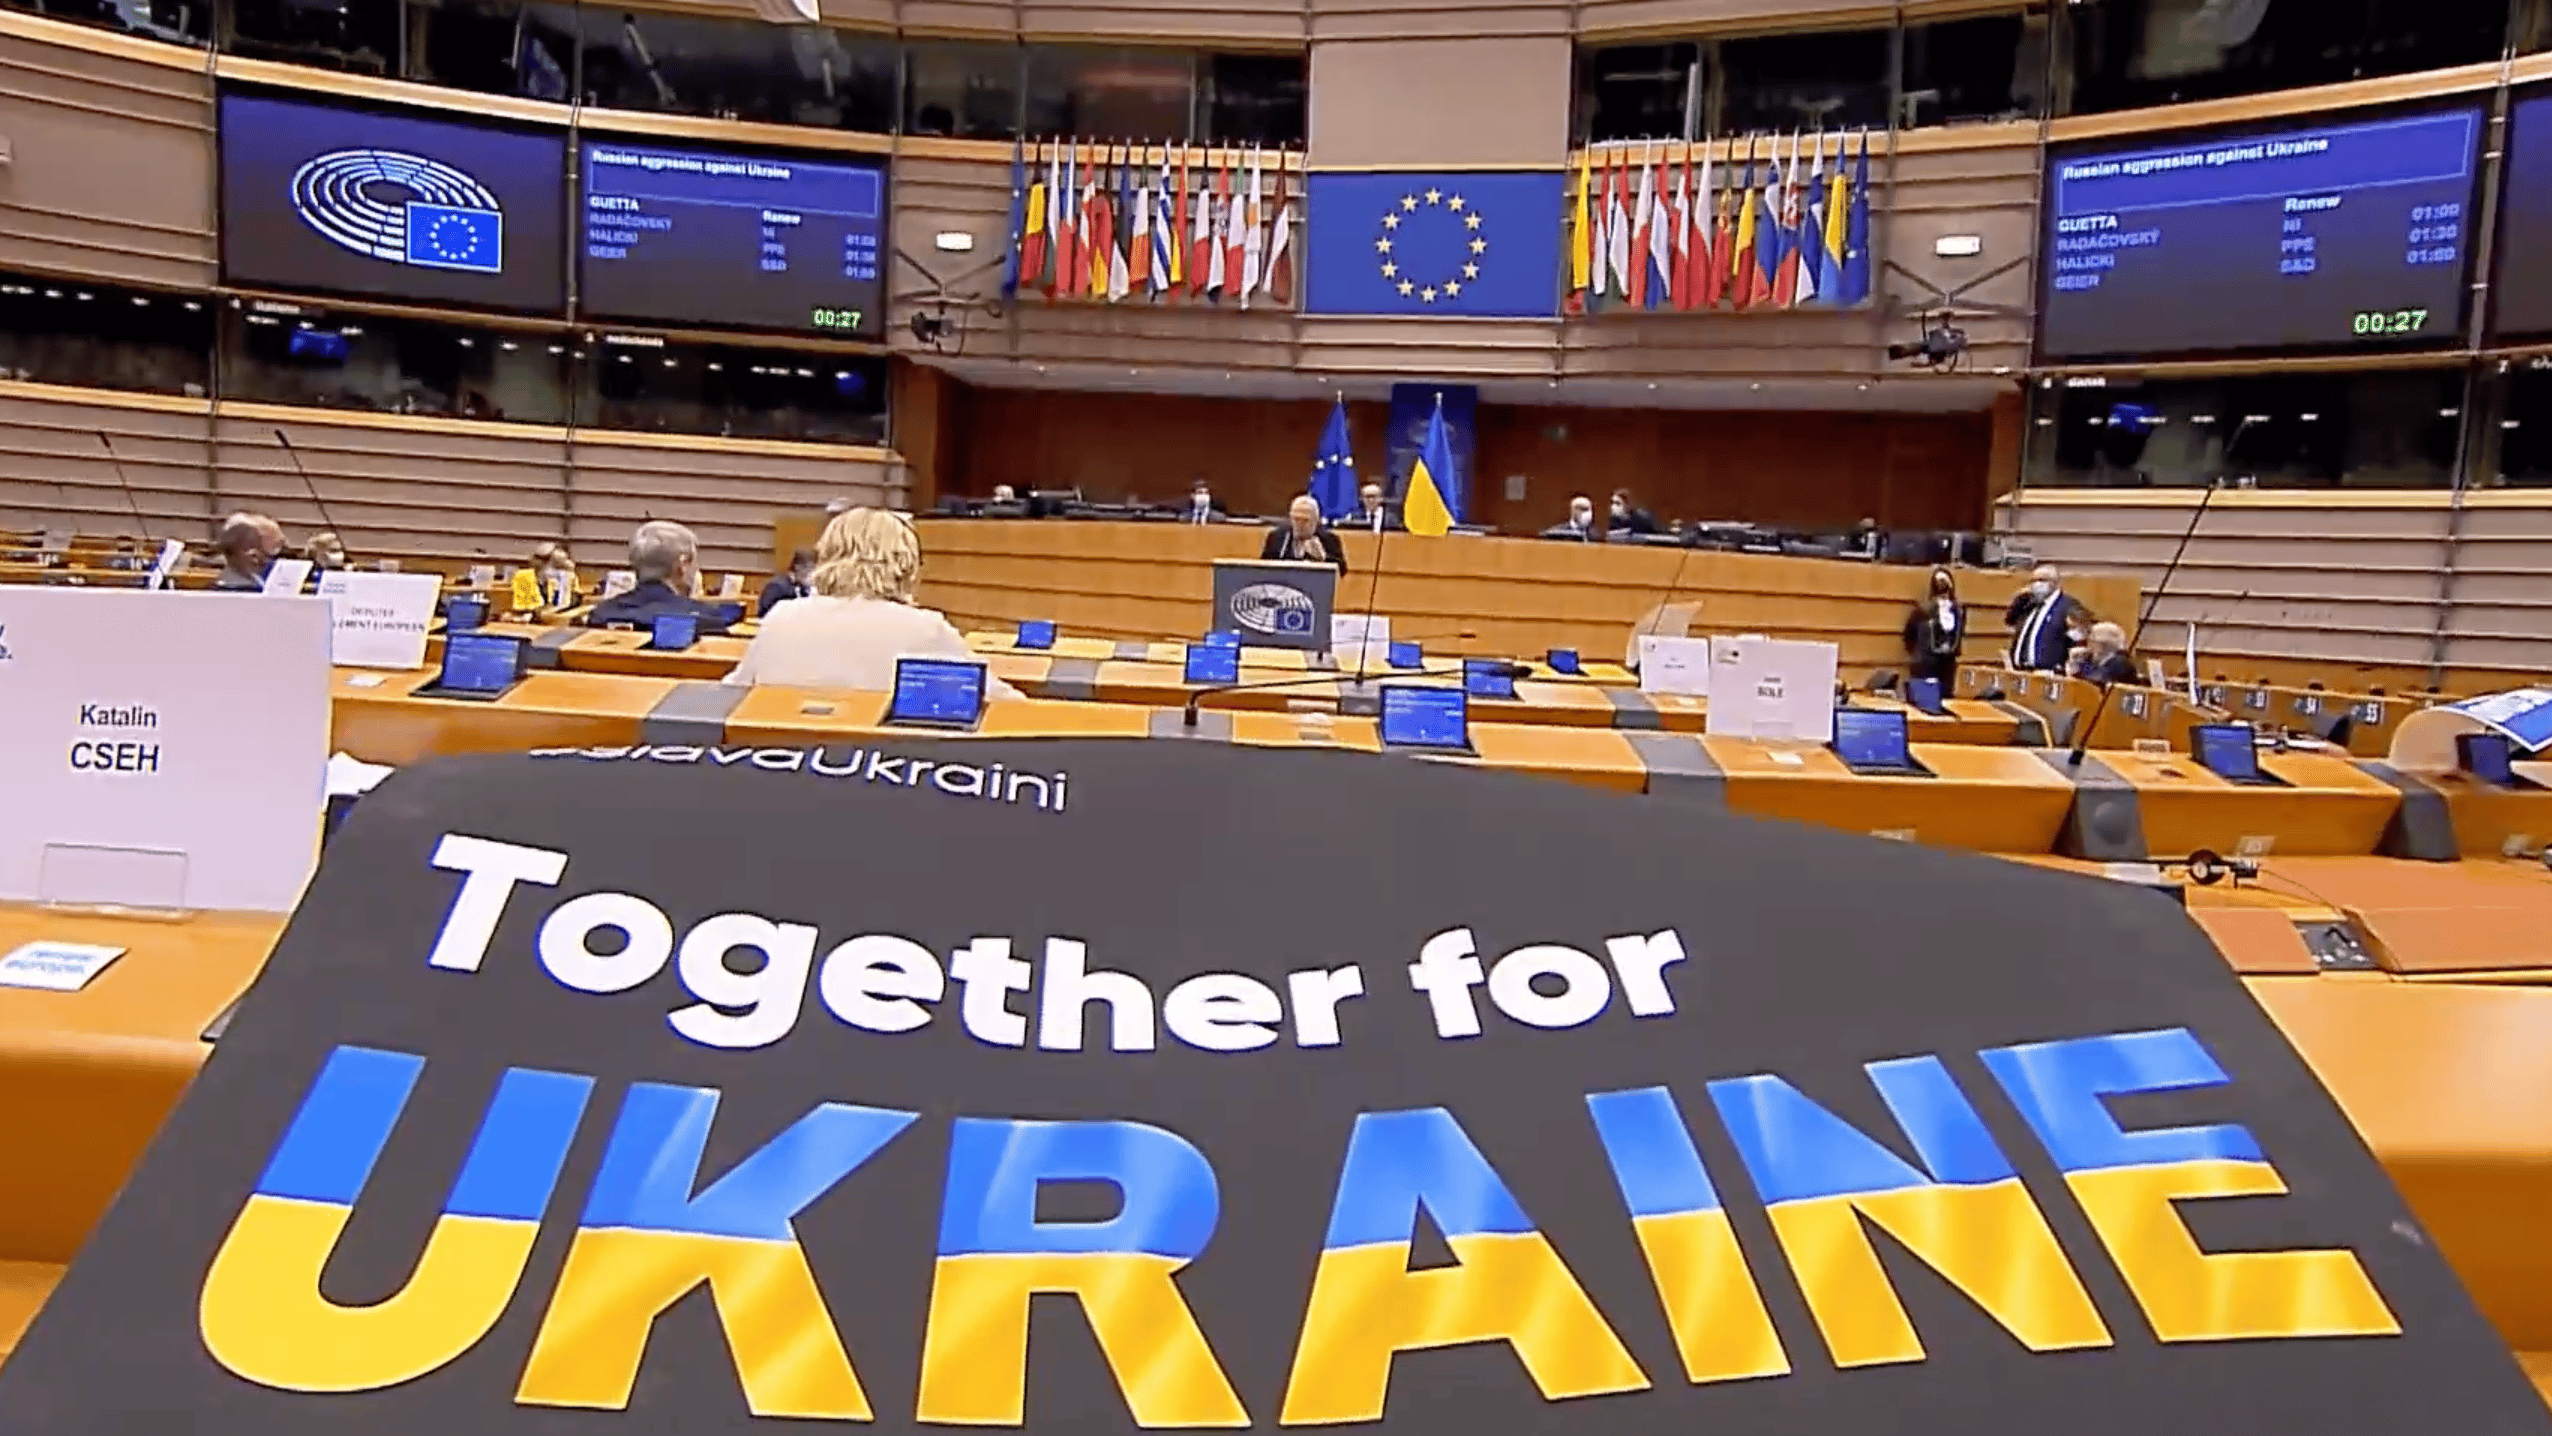 Specjalna sesja Parlamentu Europejskiego o wojnie w Ukrainie. Wystąpił m.in. prezydent Wołodymyr Zełenski, 1 marca 2022